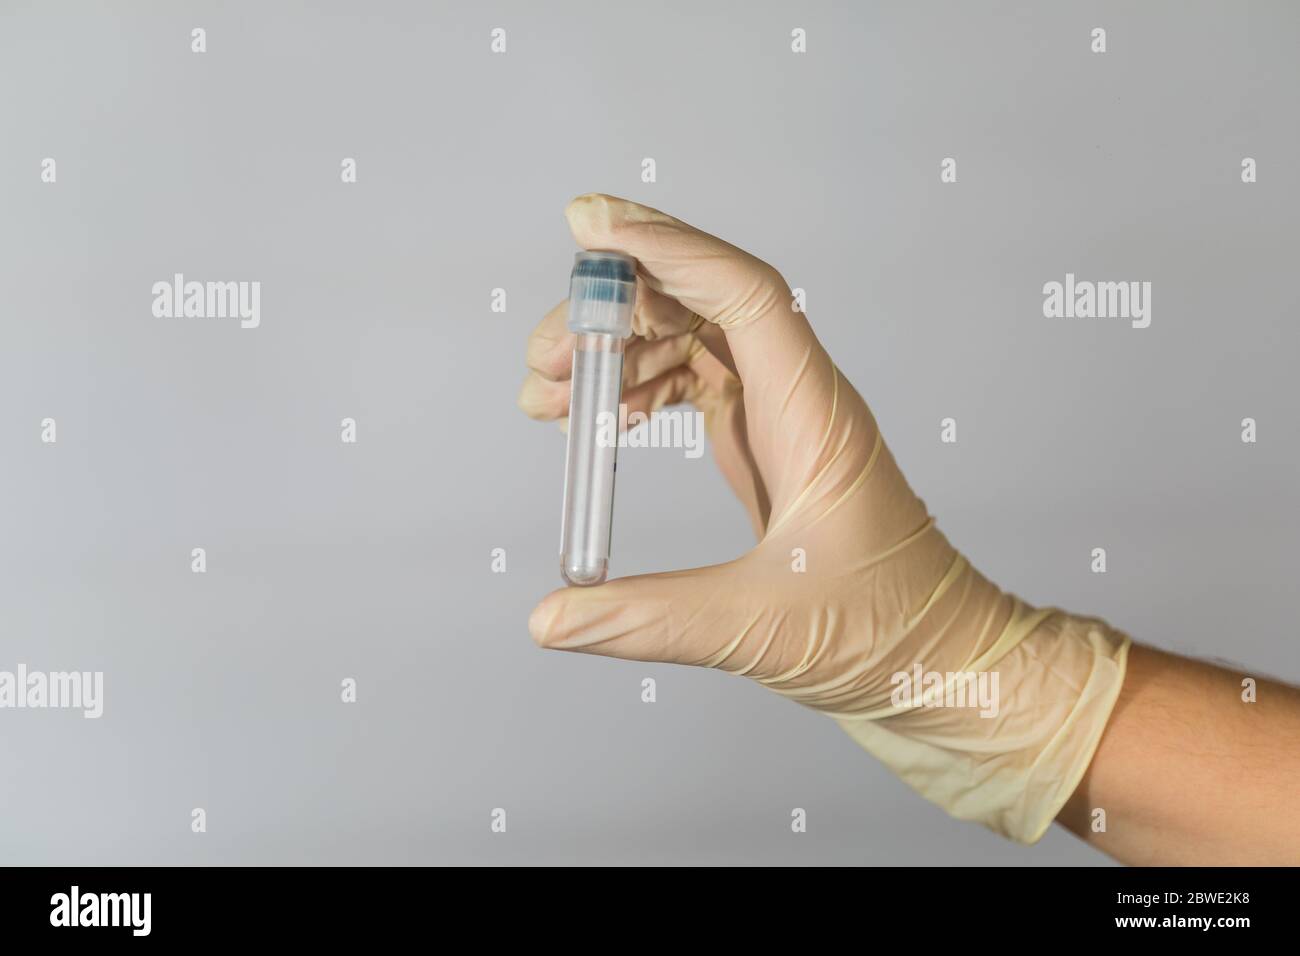 Provetta vuota per l'analisi biomateriale nelle mani di un infermiere. Analisi clinica del virus con misure precauzionali. Foto Stock